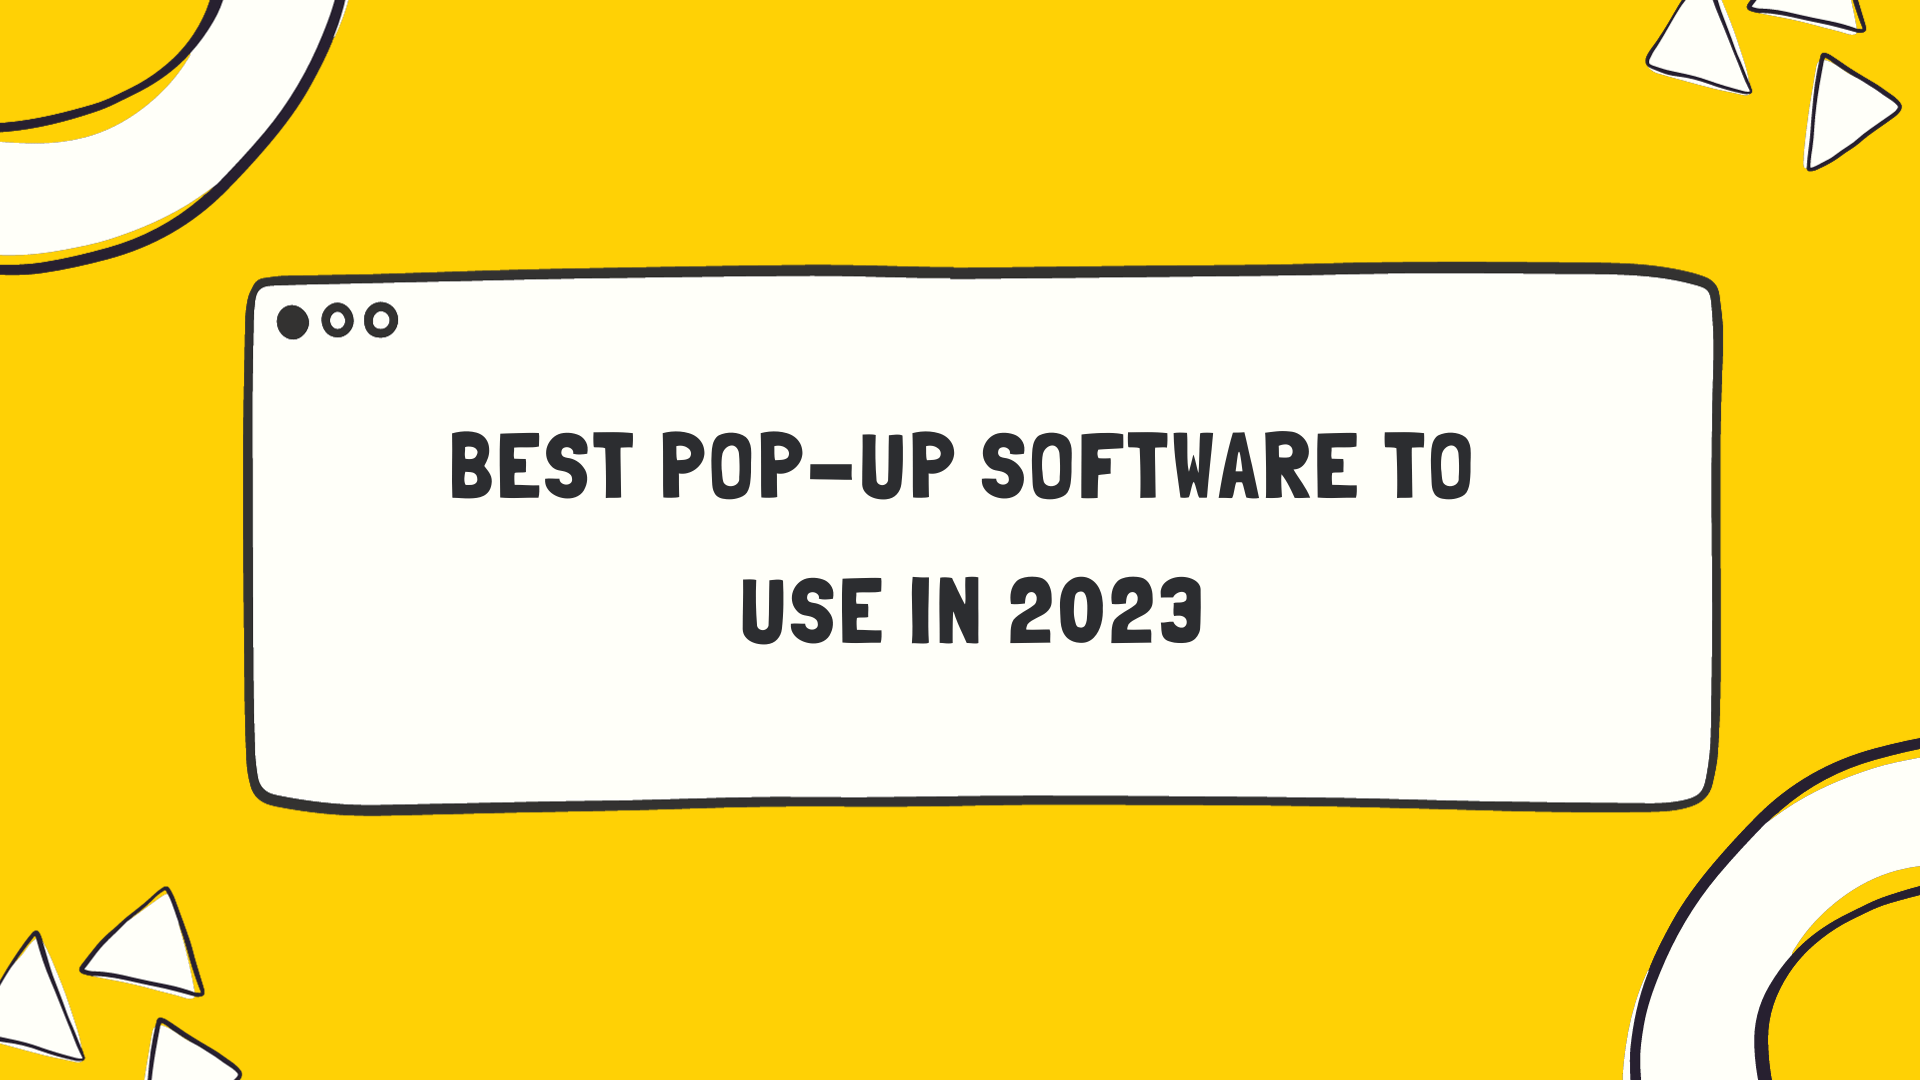 Pop-up software